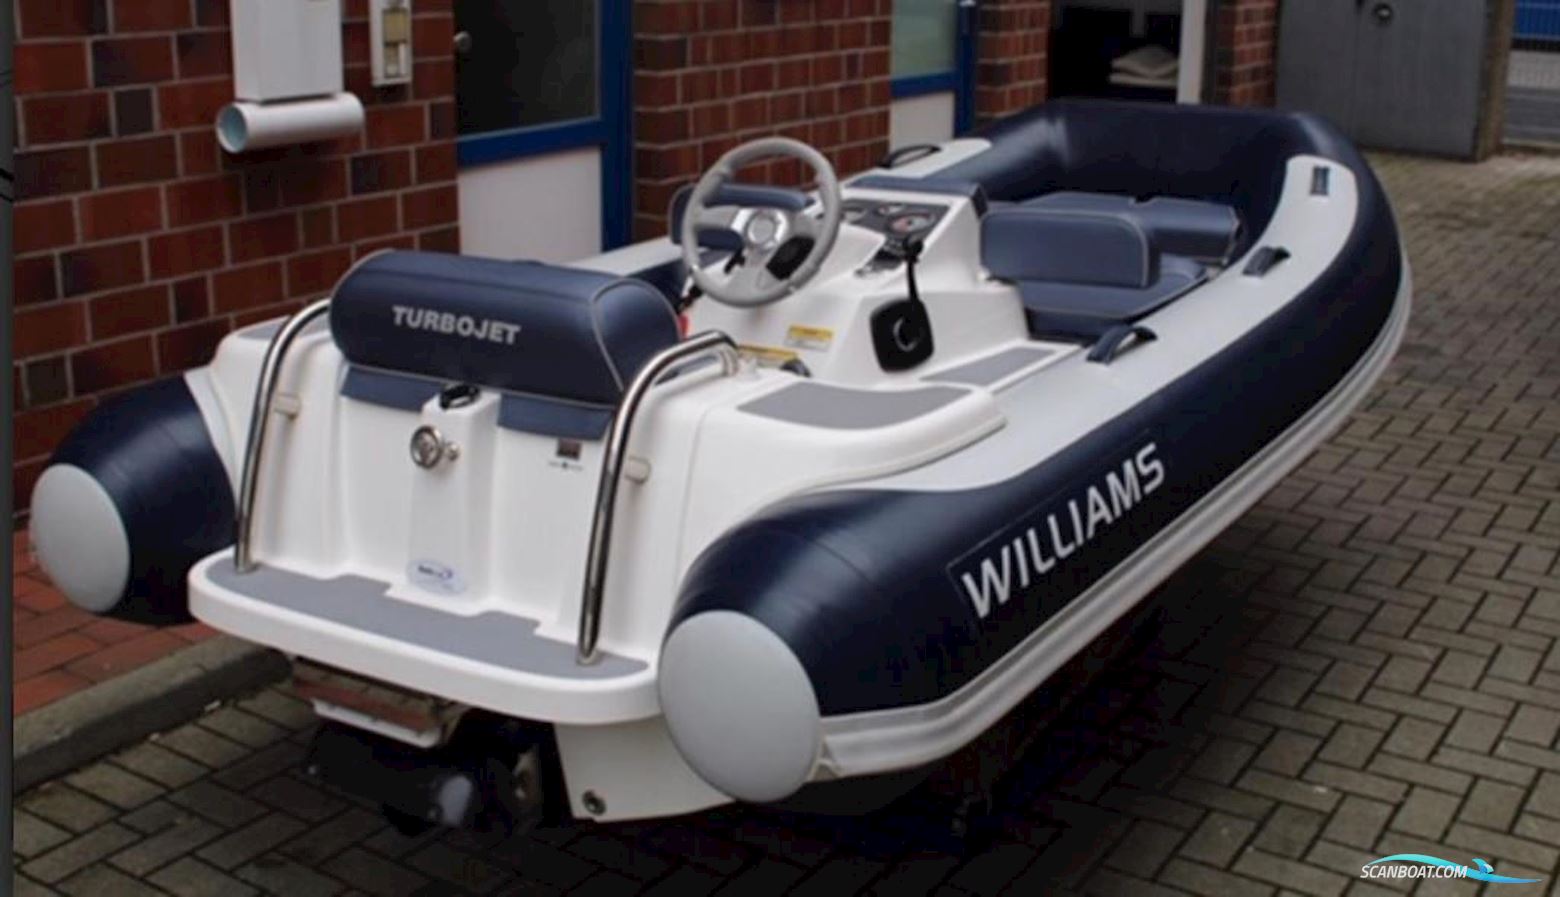 Williams Turbojet 325 Schlauchboot / Rib 2014, mit Weber Mpe 750 motor, Deutschland